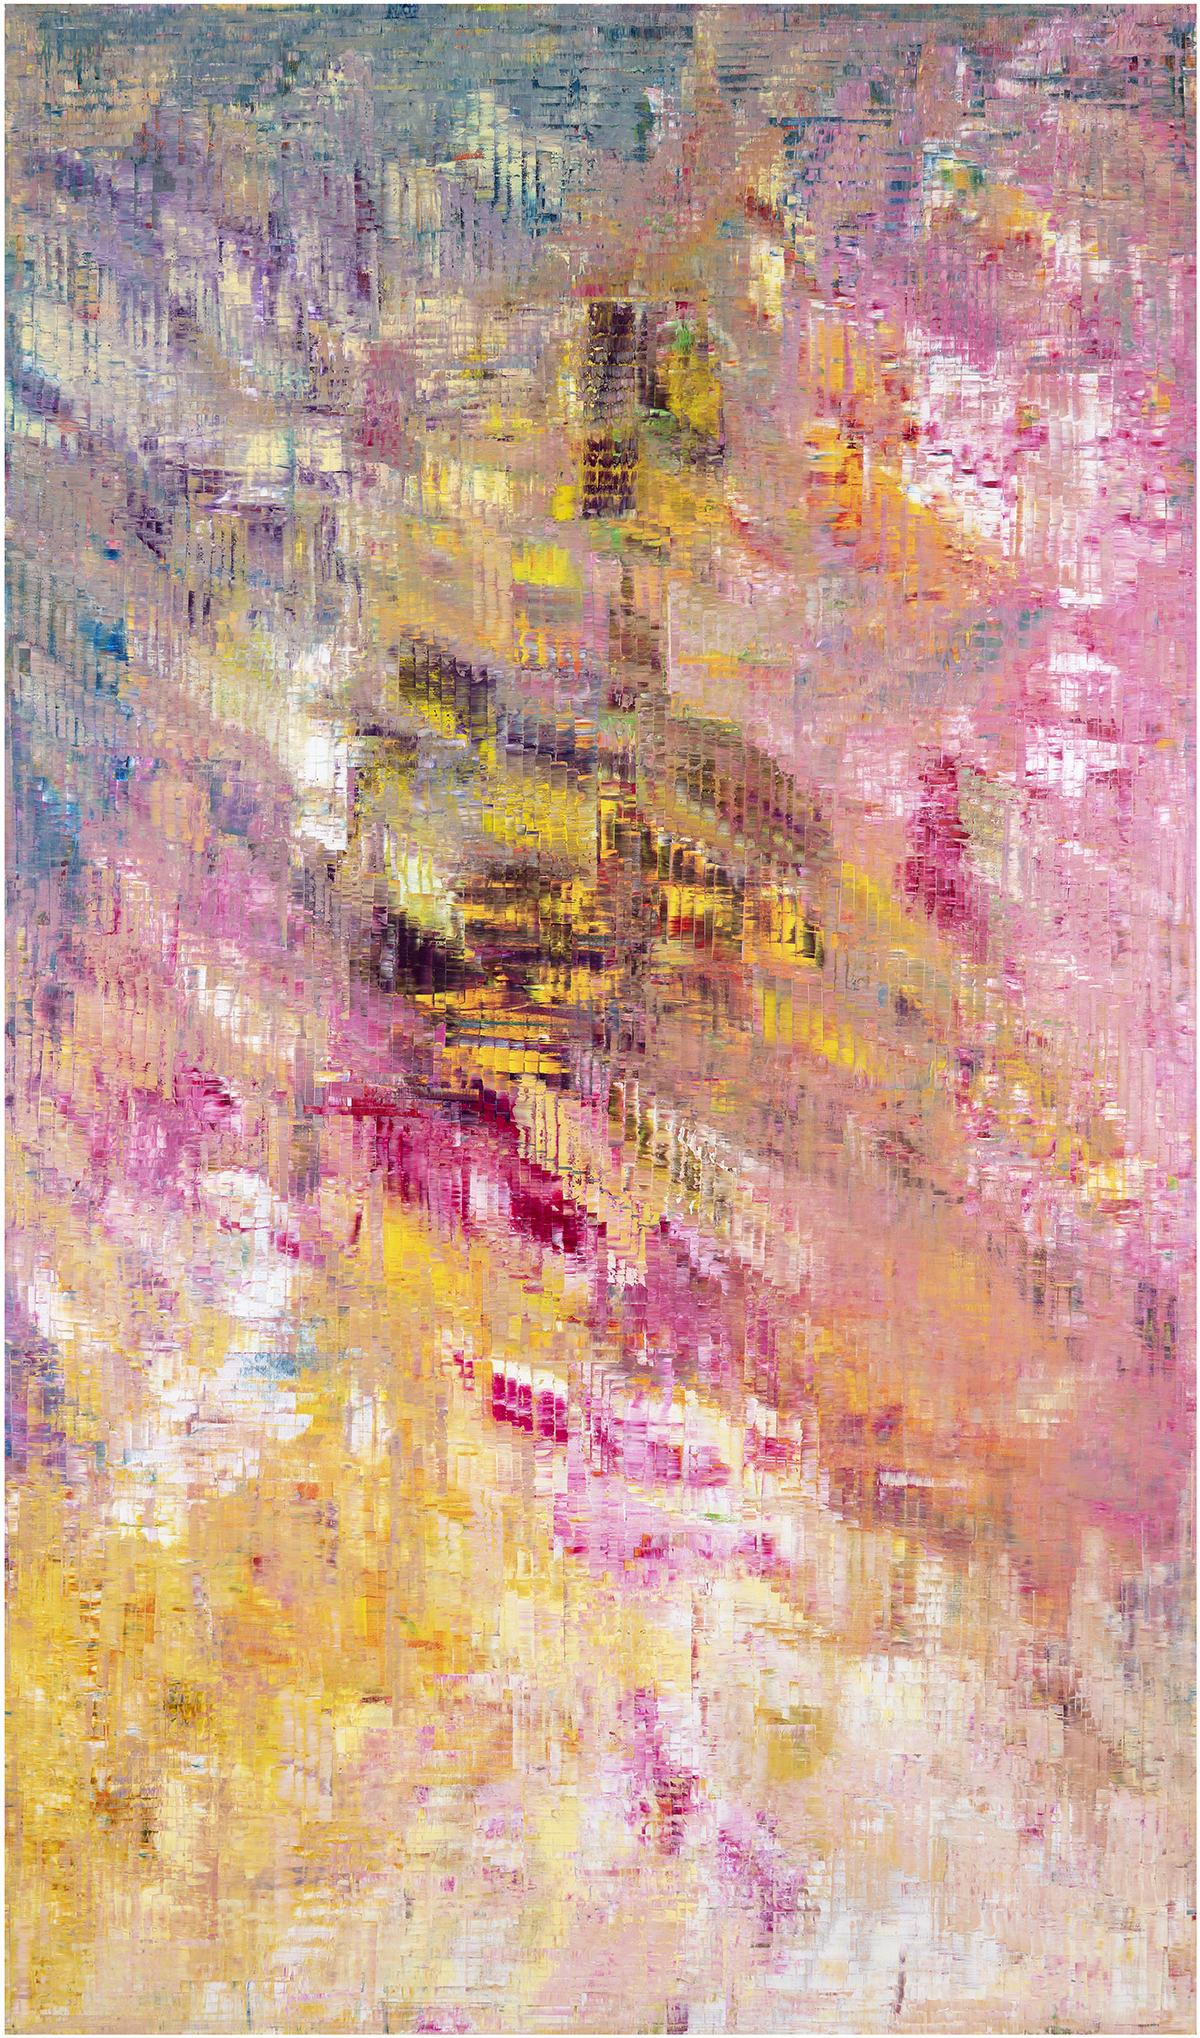 Vivid abstract pink painting